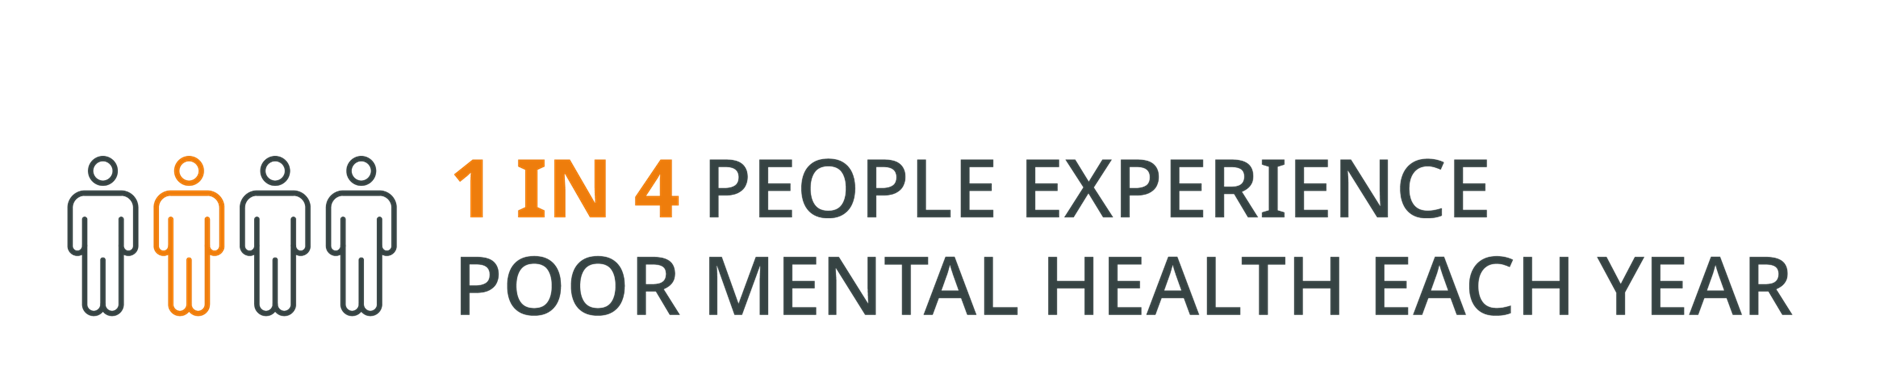 1 in 4 people experience poor mental health each year